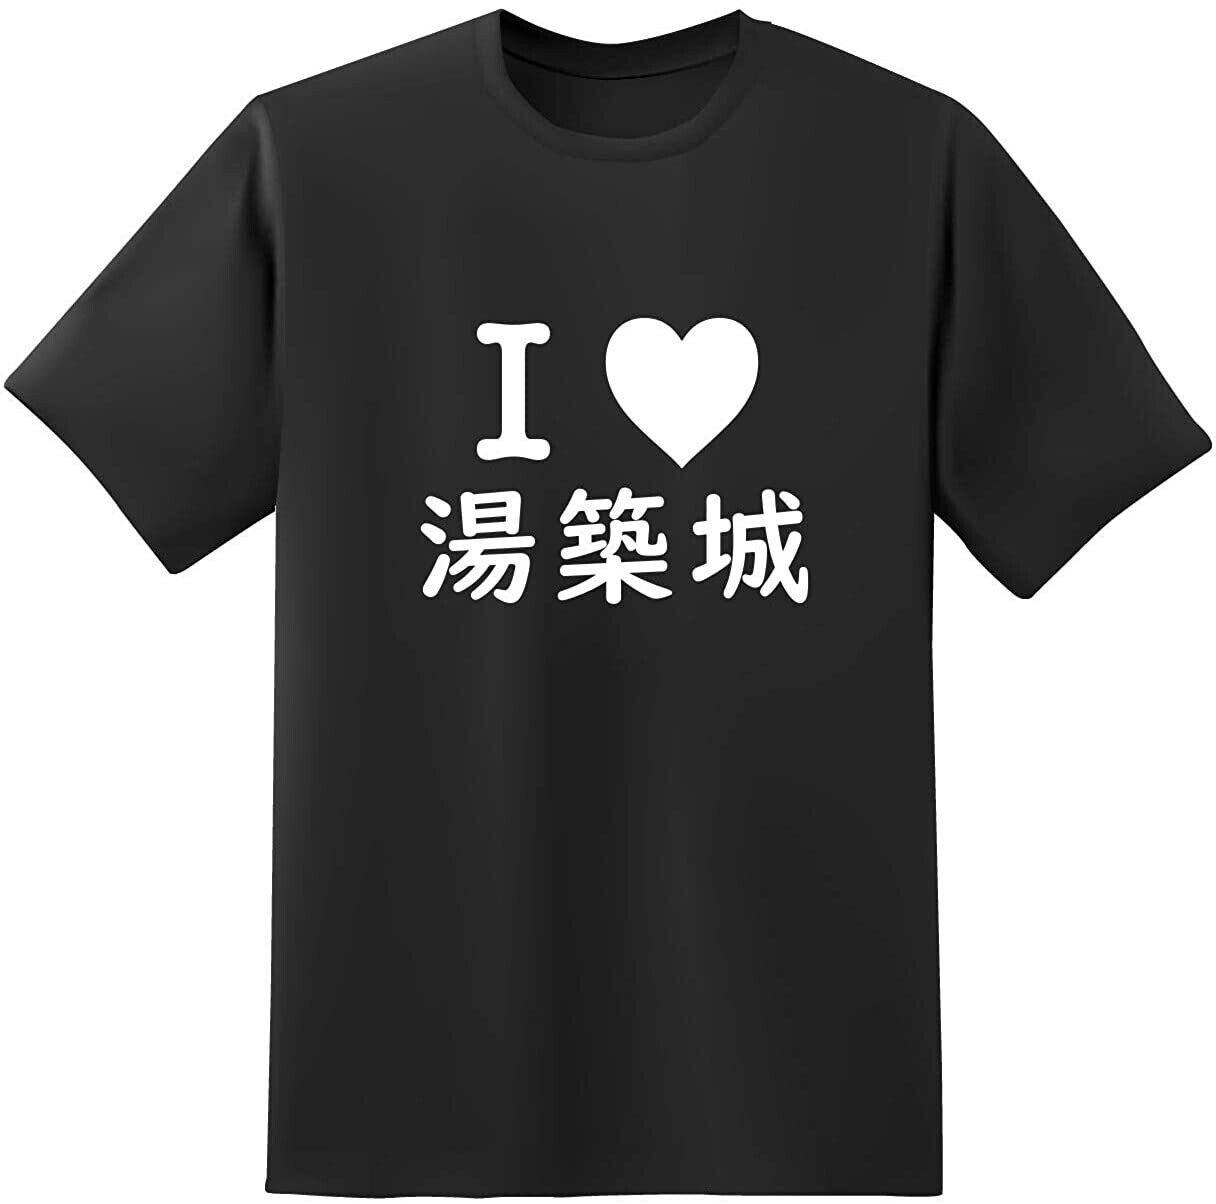 おもしろTシャツ原宿商店 【I 湯築城】 白黒 半袖 文字 tシャツ画像